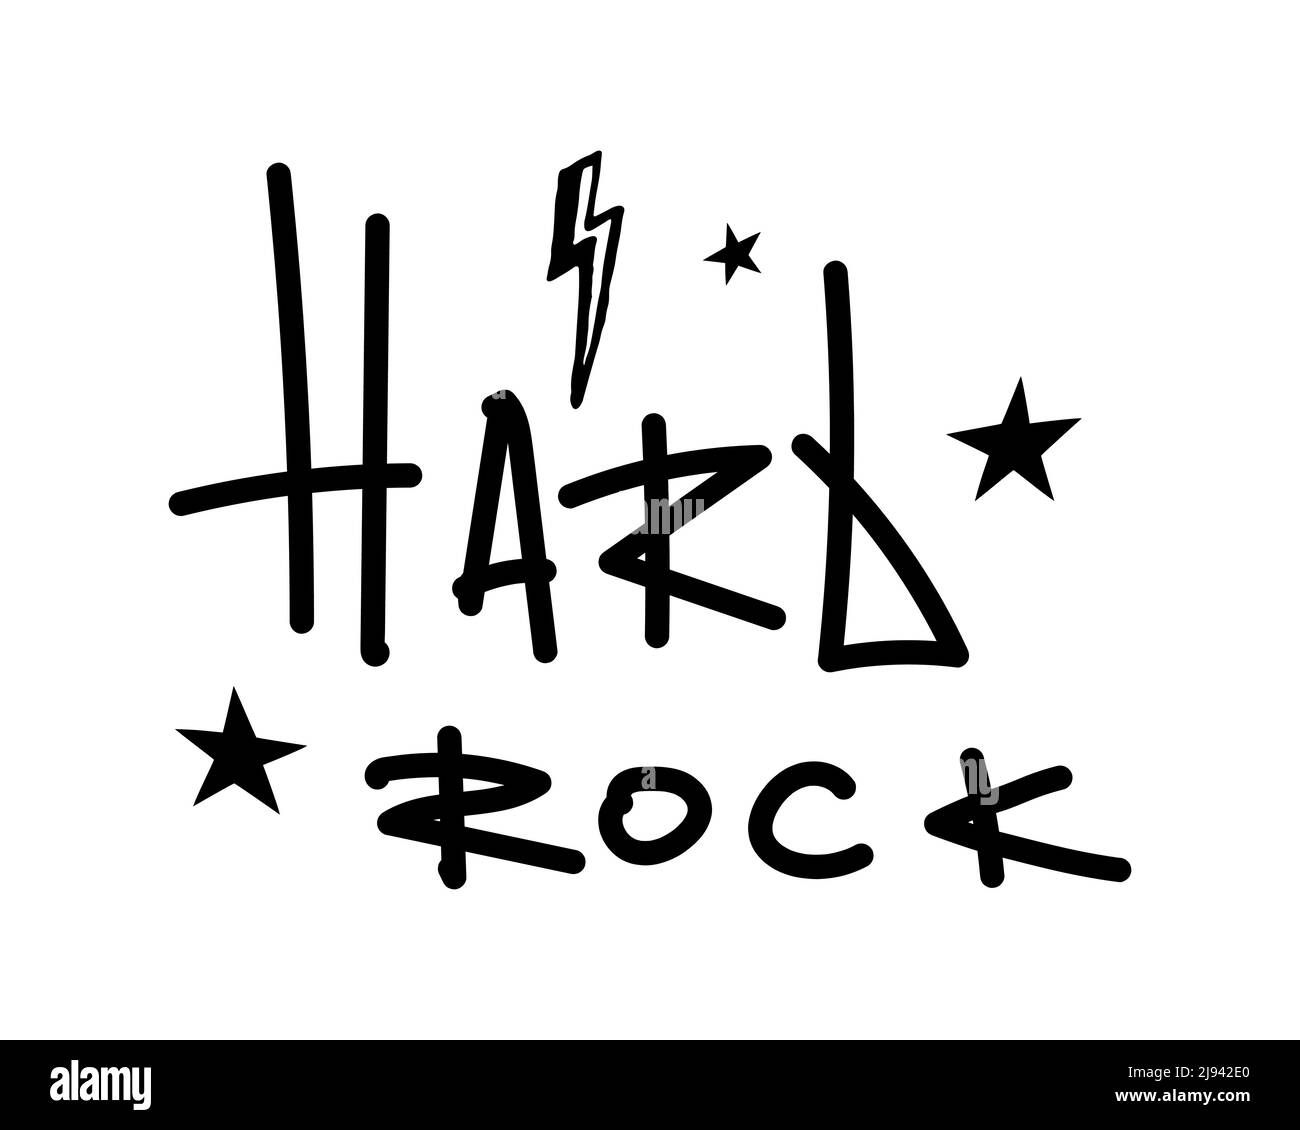 Isolierter Schriftzug Hard Rock mit Stern und Blitz. Vektorgrafik. Stock Vektor